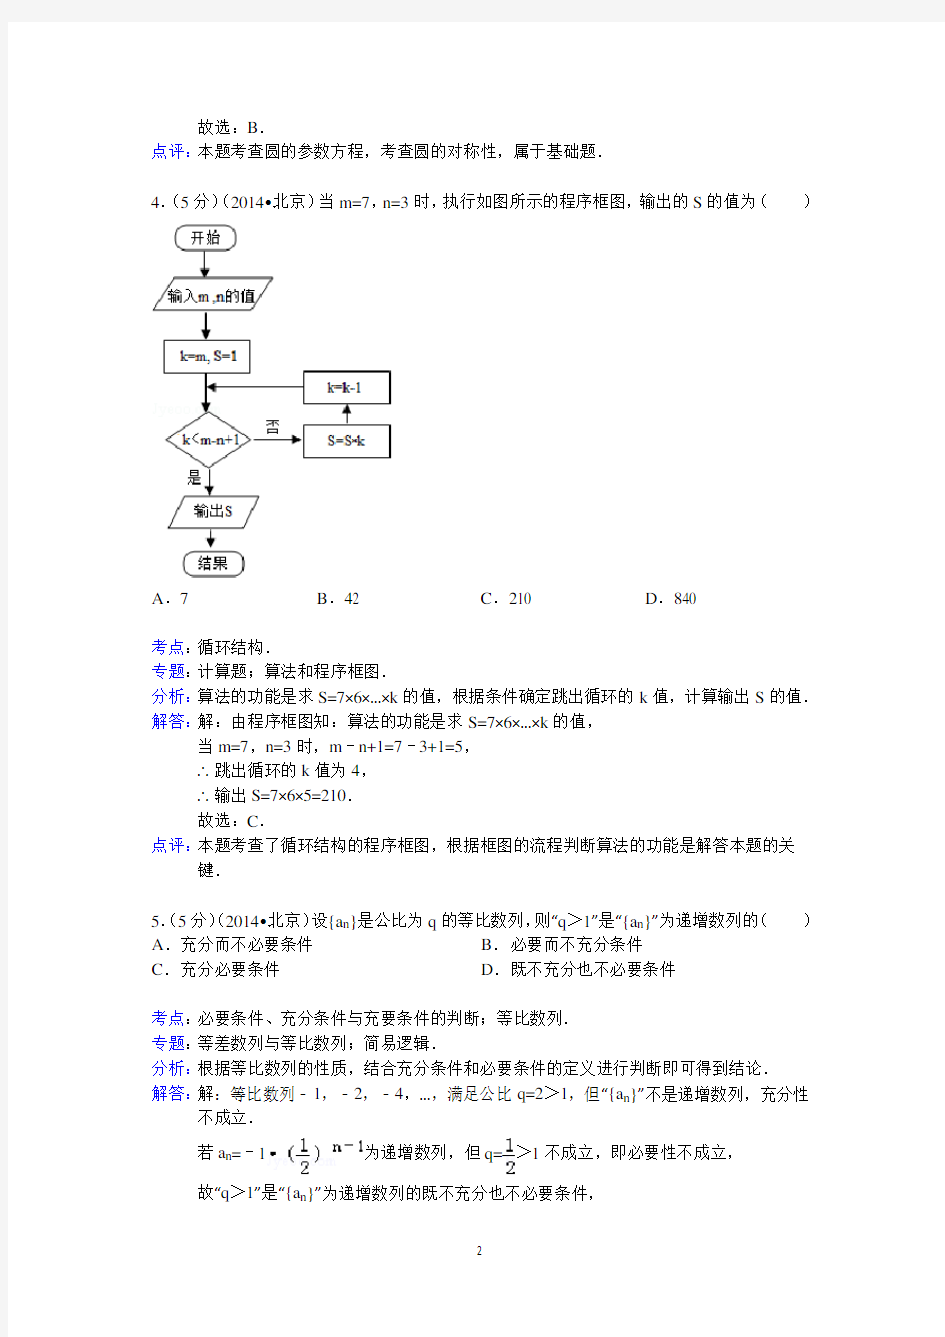 (完整版)2014年北京市高考数学试卷(理科)答案与解析